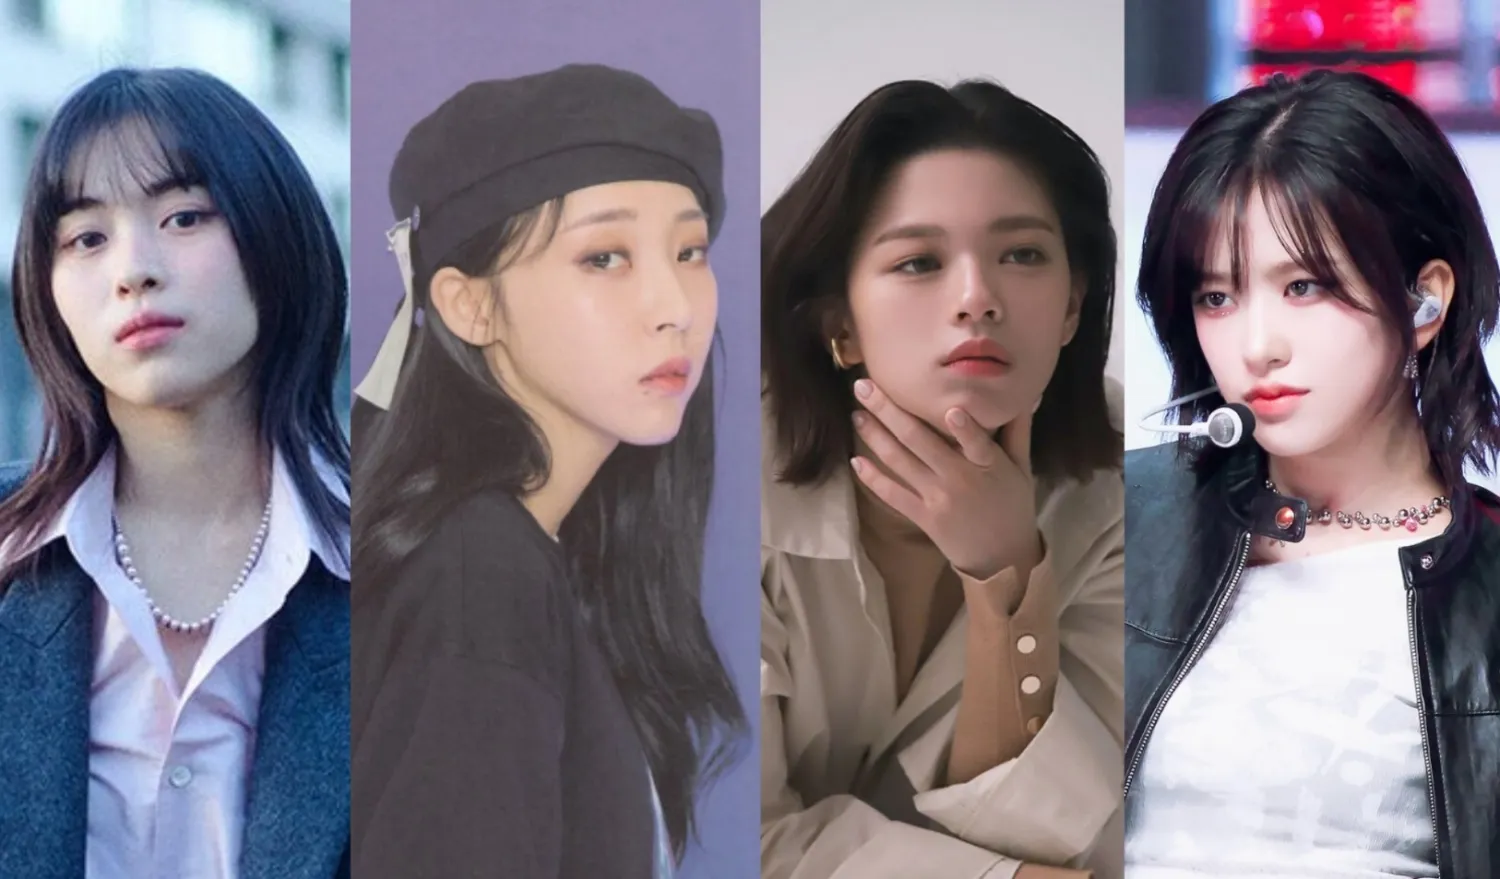 10 K-Pop-Idole, die wirklich hübsch sind: Moonbyul, Jeongyeon, Ryujin und mehr!